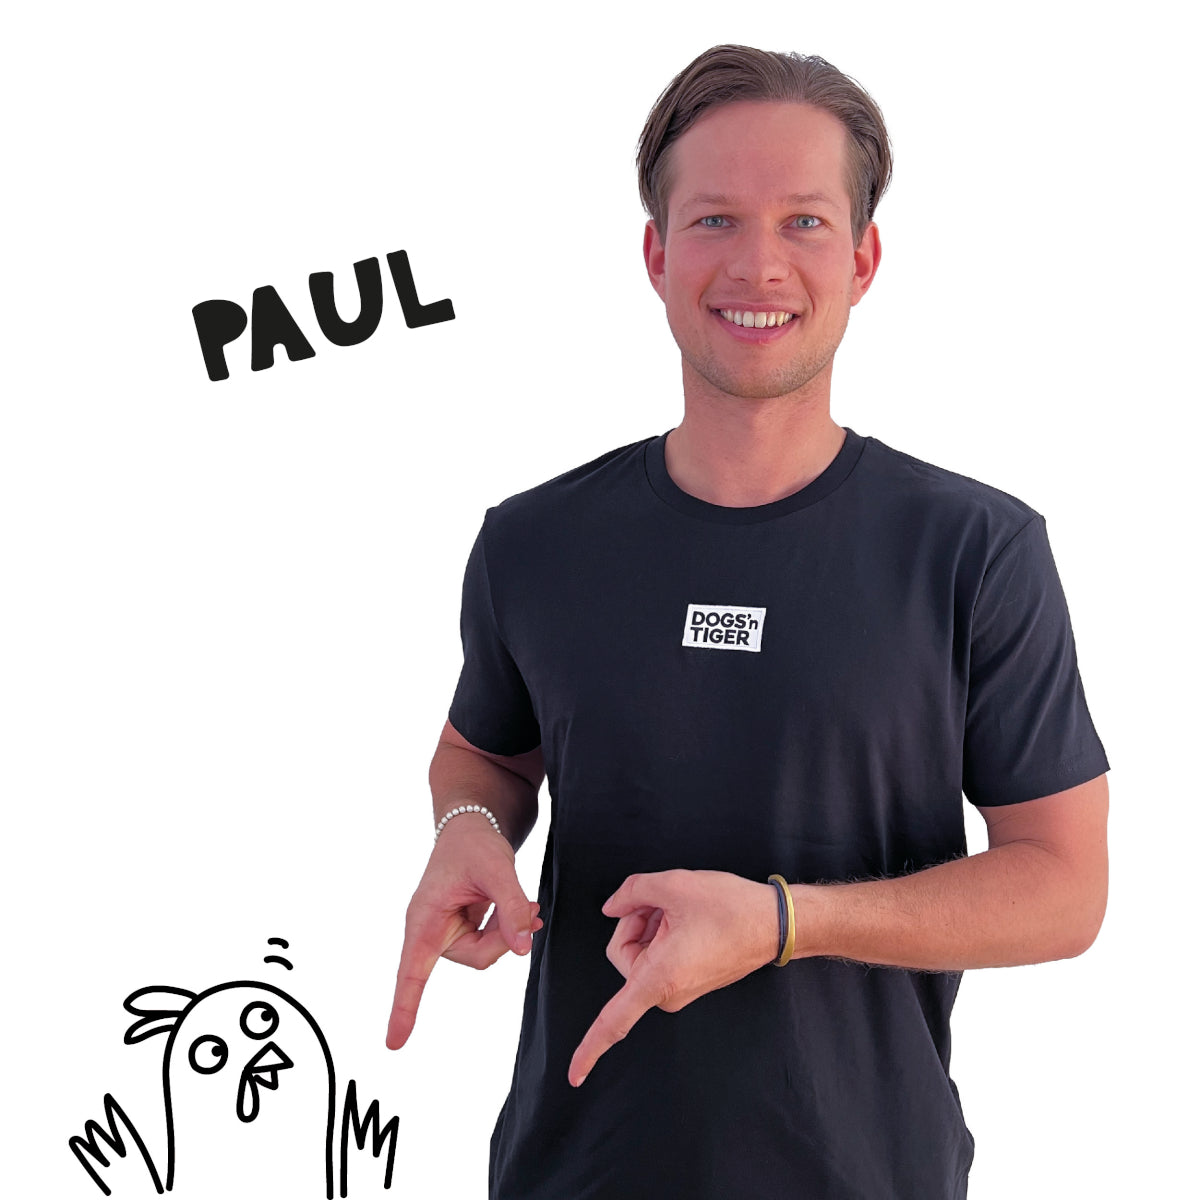 Foto von Paul mit schwarzem Shirt mit Dogs'n Tiger Logo